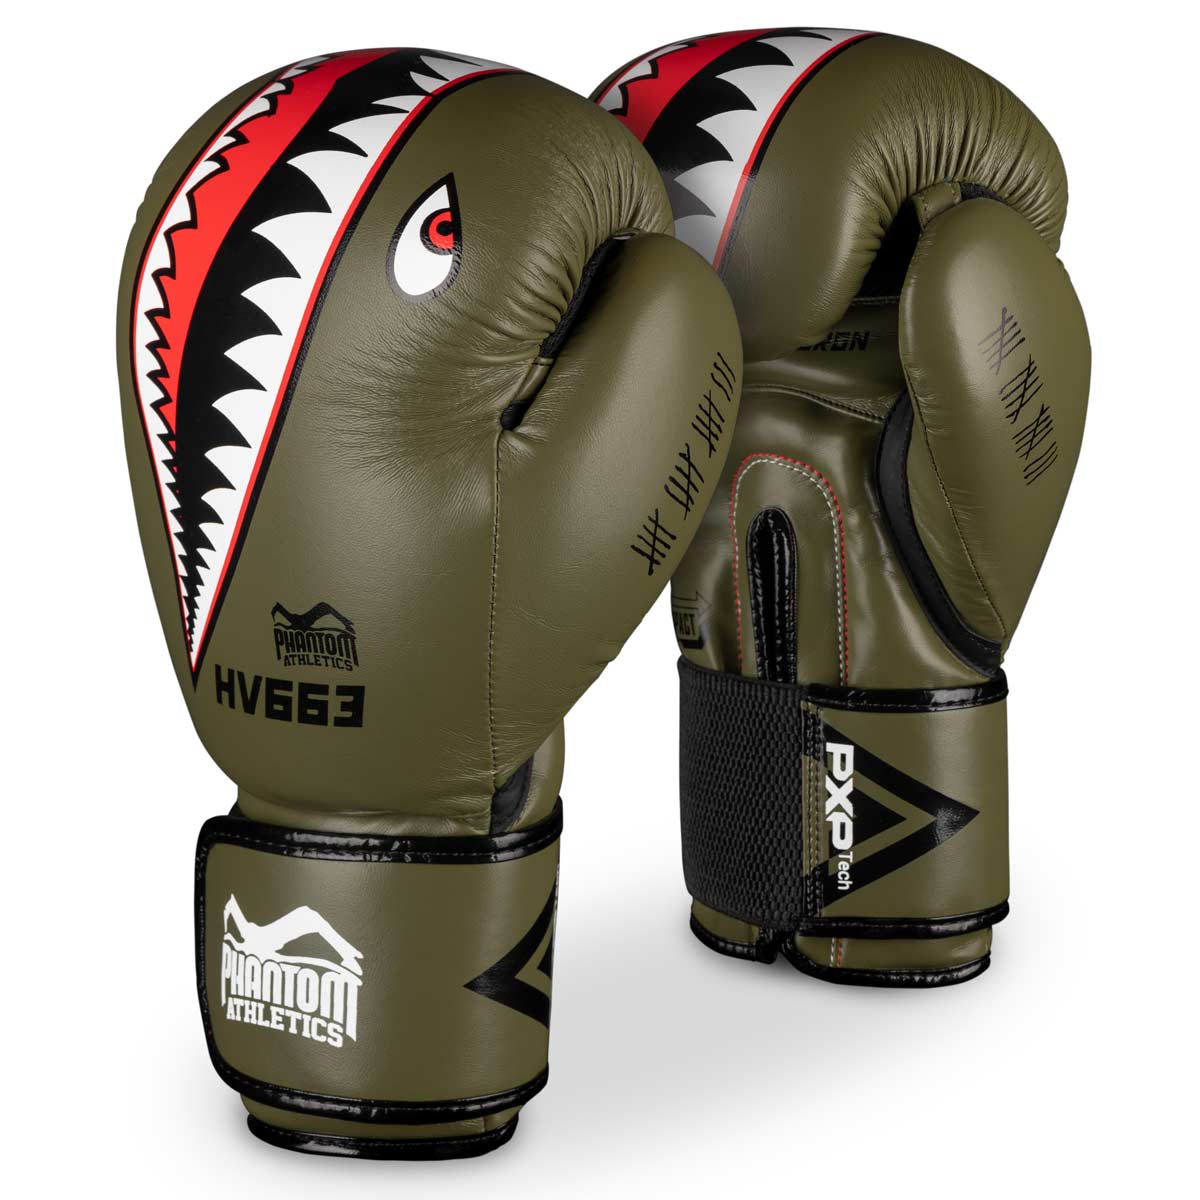 Acheter des gants MMA pour le combat et la compétition - PHANTOM ATHLETICS